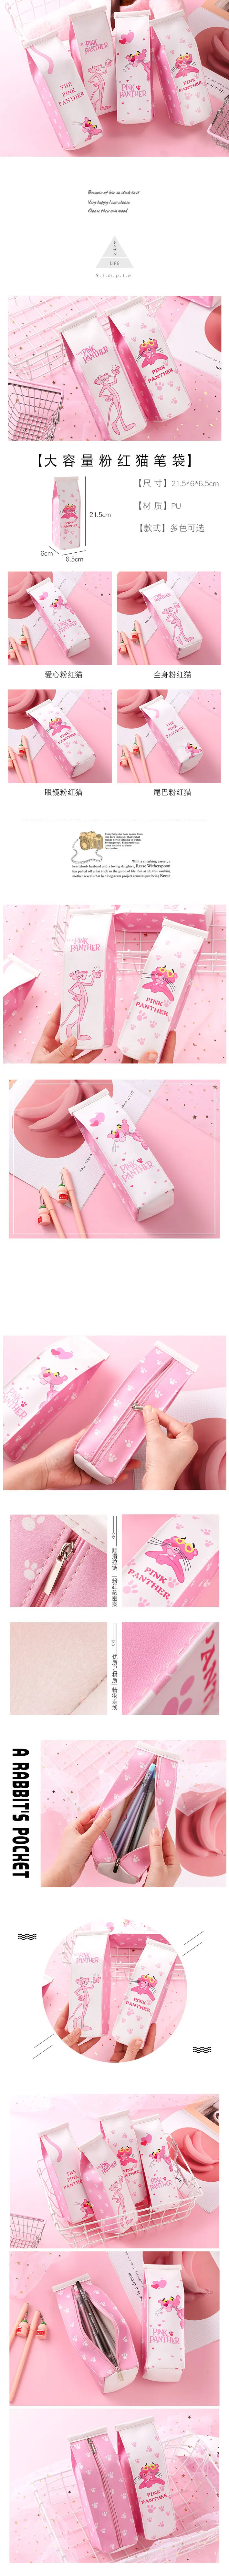 Розовый студенческий подарок Креативный красивый кот молочная коробка стильная ручка сумка розовый чехол для ручки милые животные пантера карандаш милый кошелек